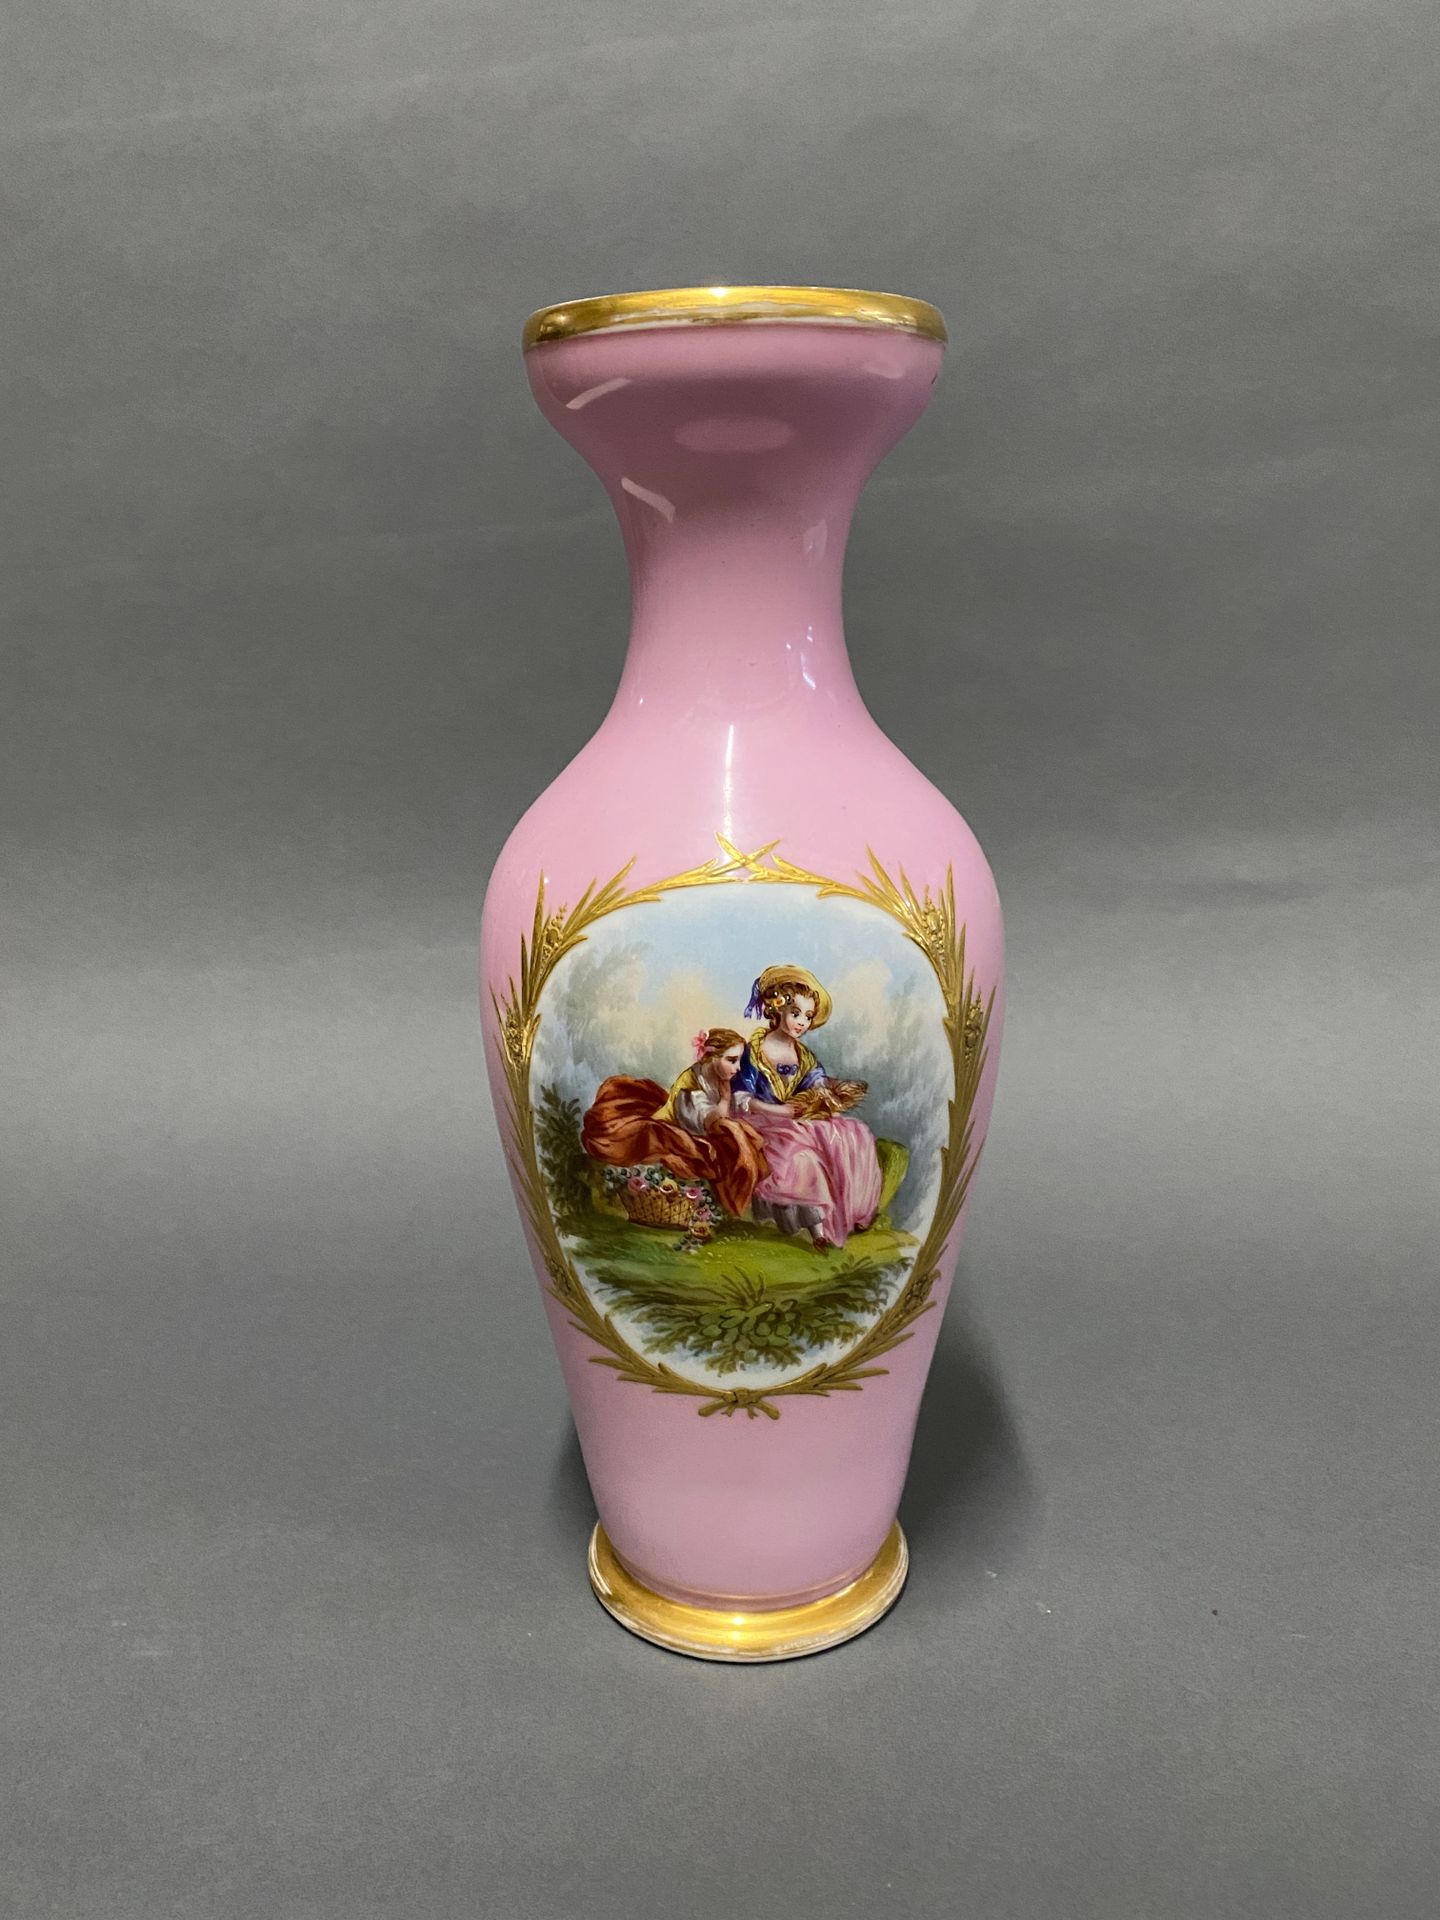 Null 粉红色背景的瓷质花瓶，装饰有保护区内的动画场景

19世纪晚期

高：33厘米（颈部有缺口）